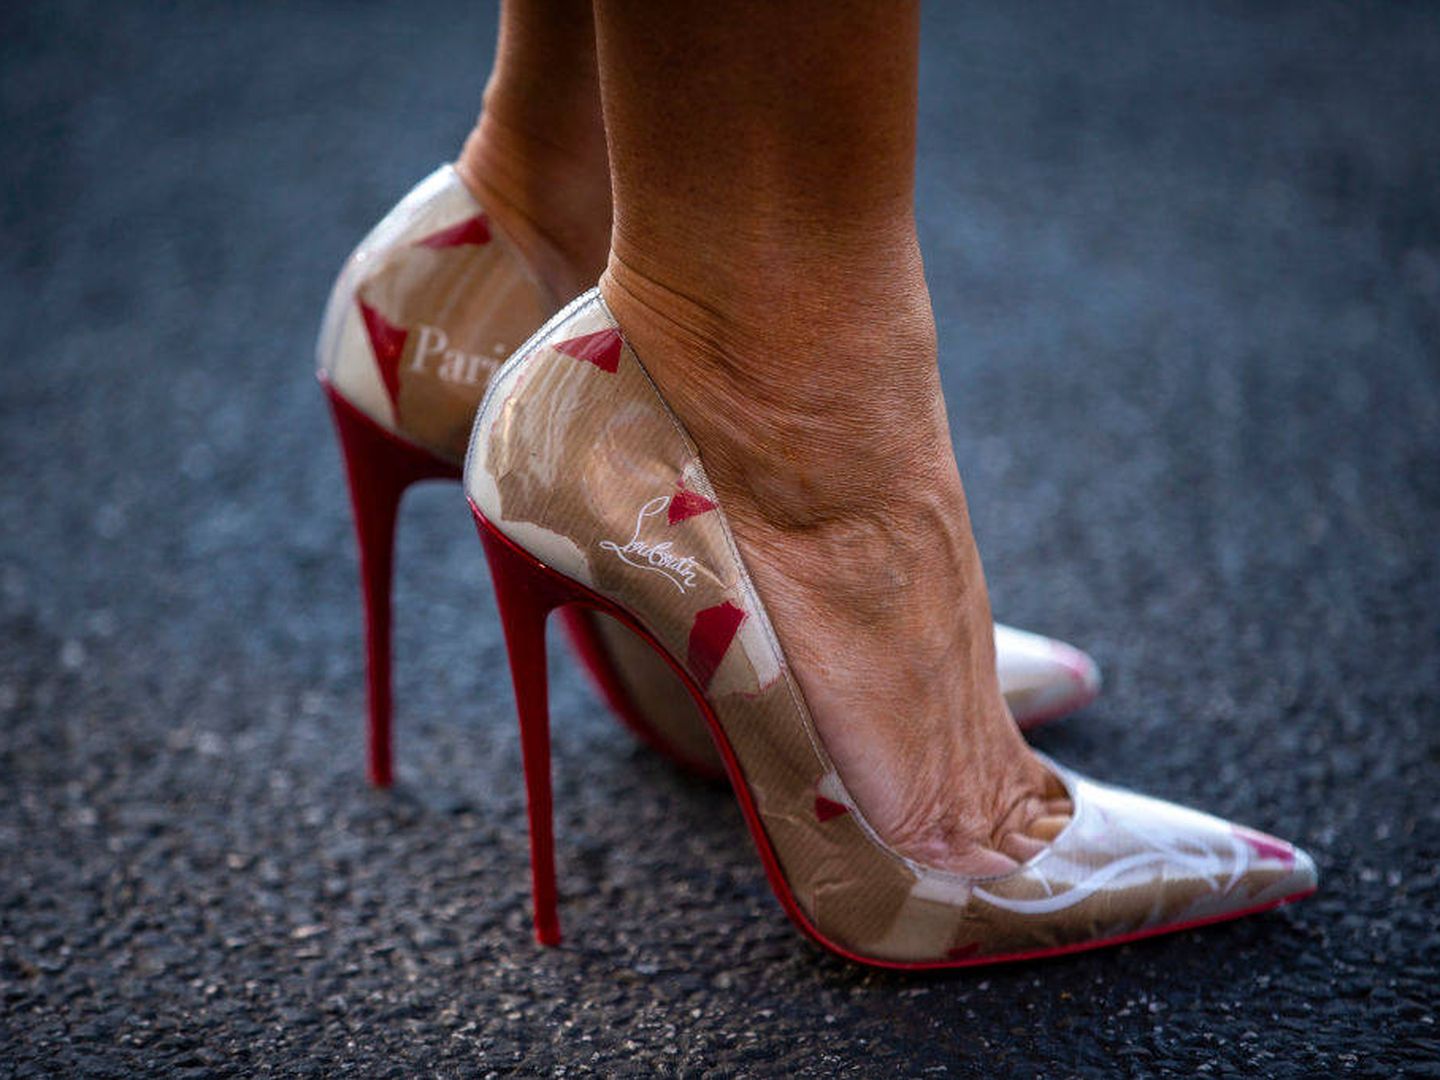 Detalle de los zapatos de Melania Trump. (Getty Images)